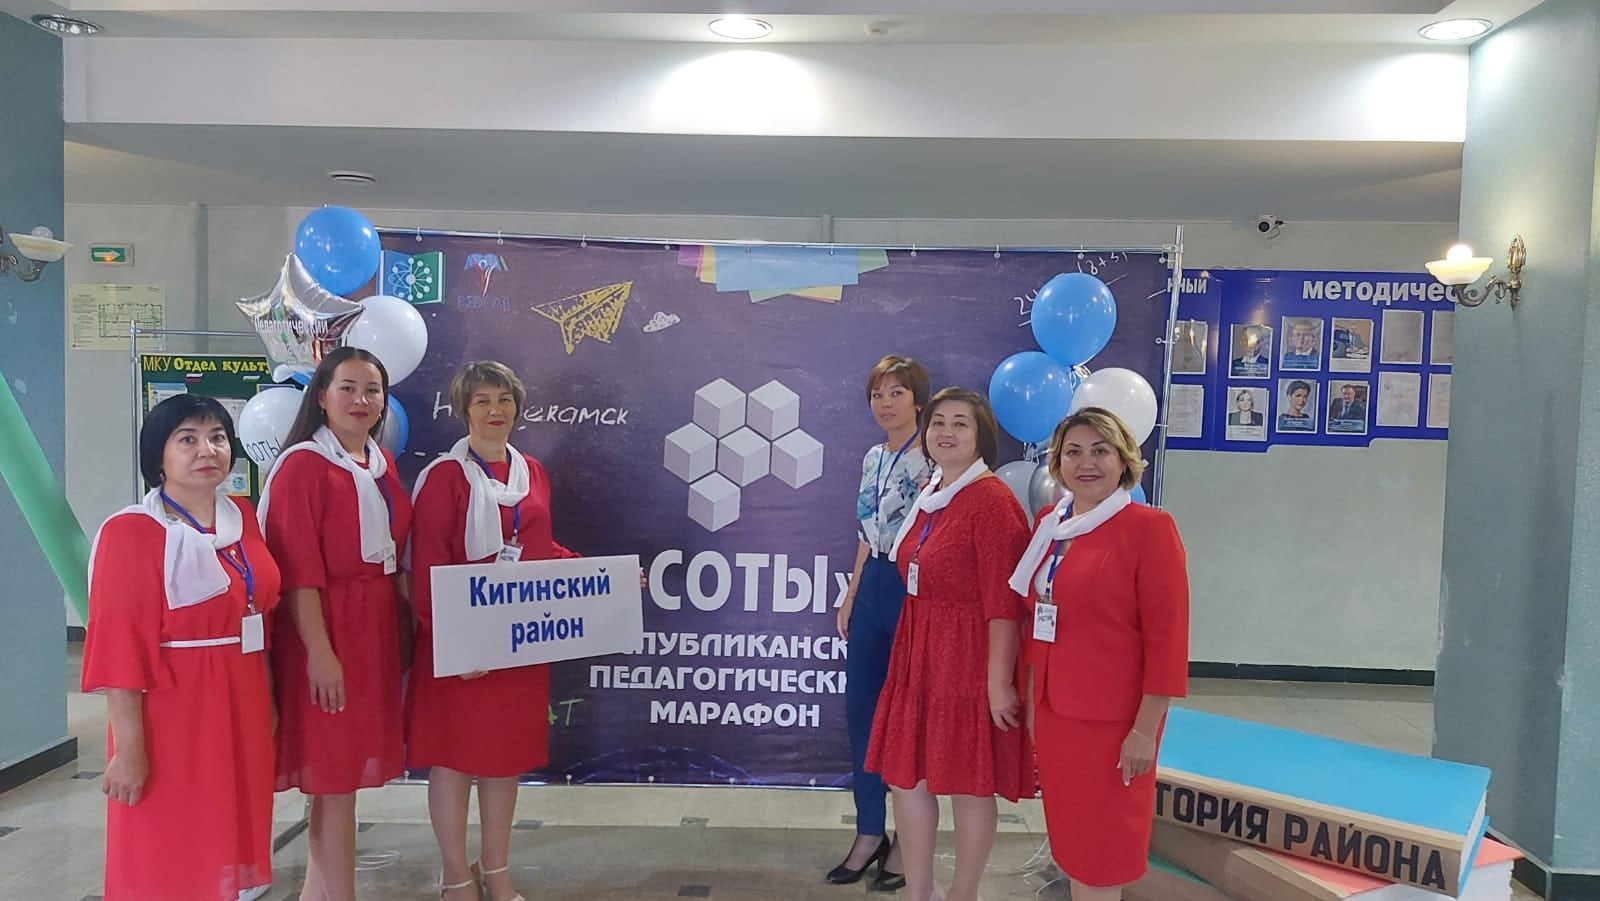 Педагоги Кигинского района приняли участие в Республиканском марафоне учителей